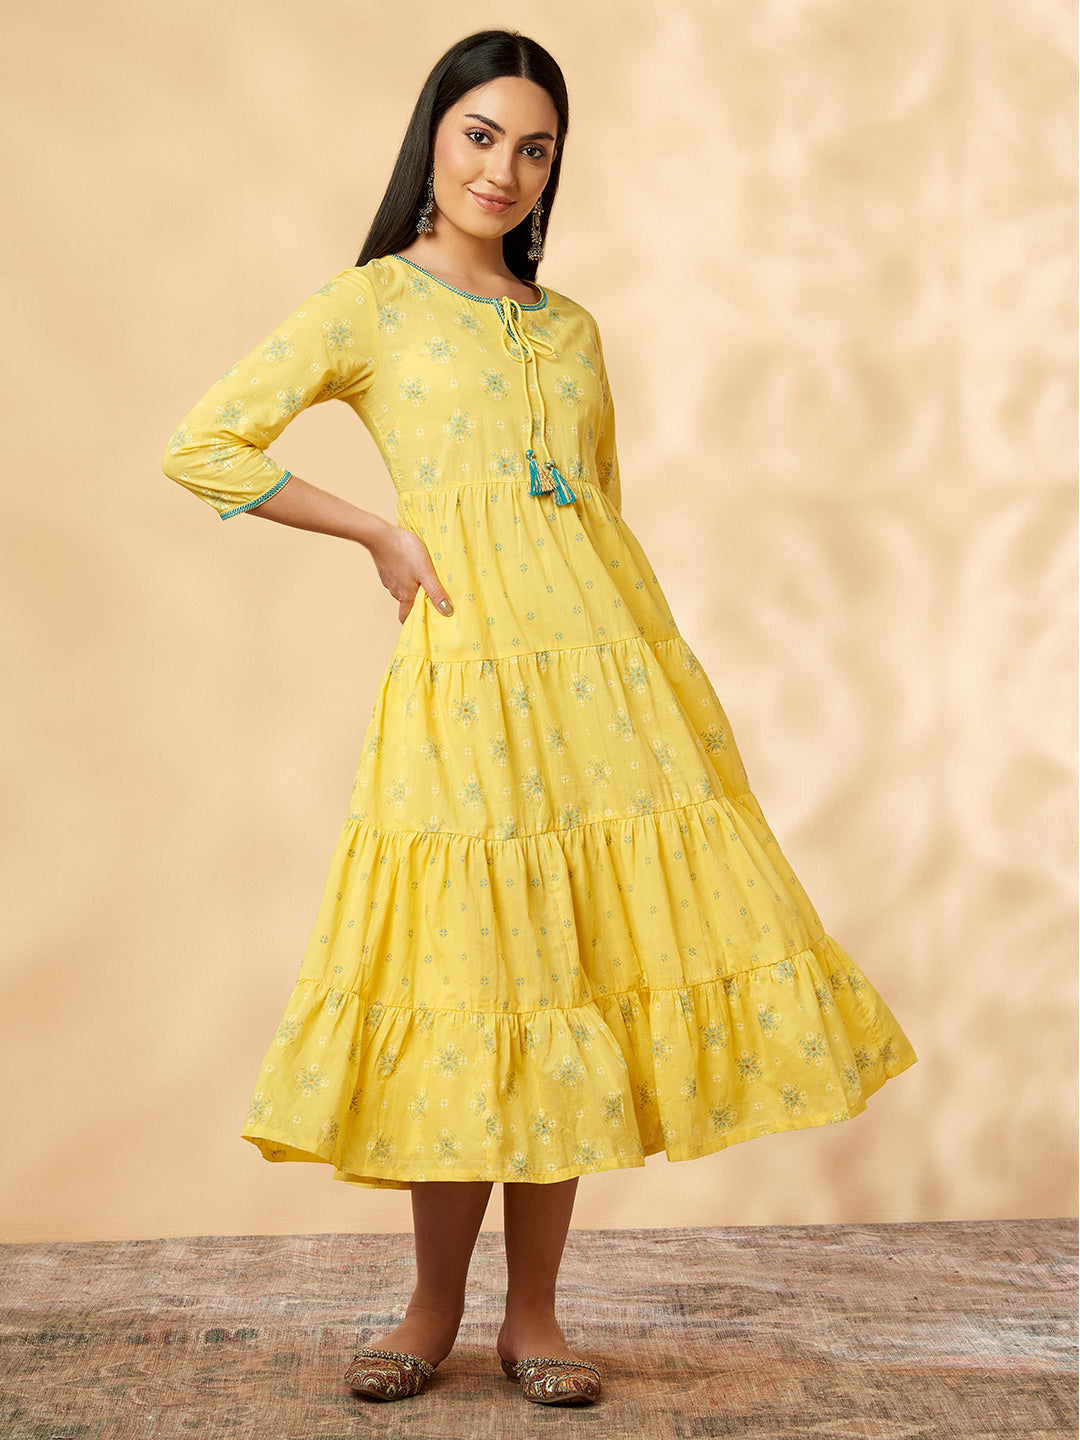 Women's Yellow Printed Tiered Dress - IMARA